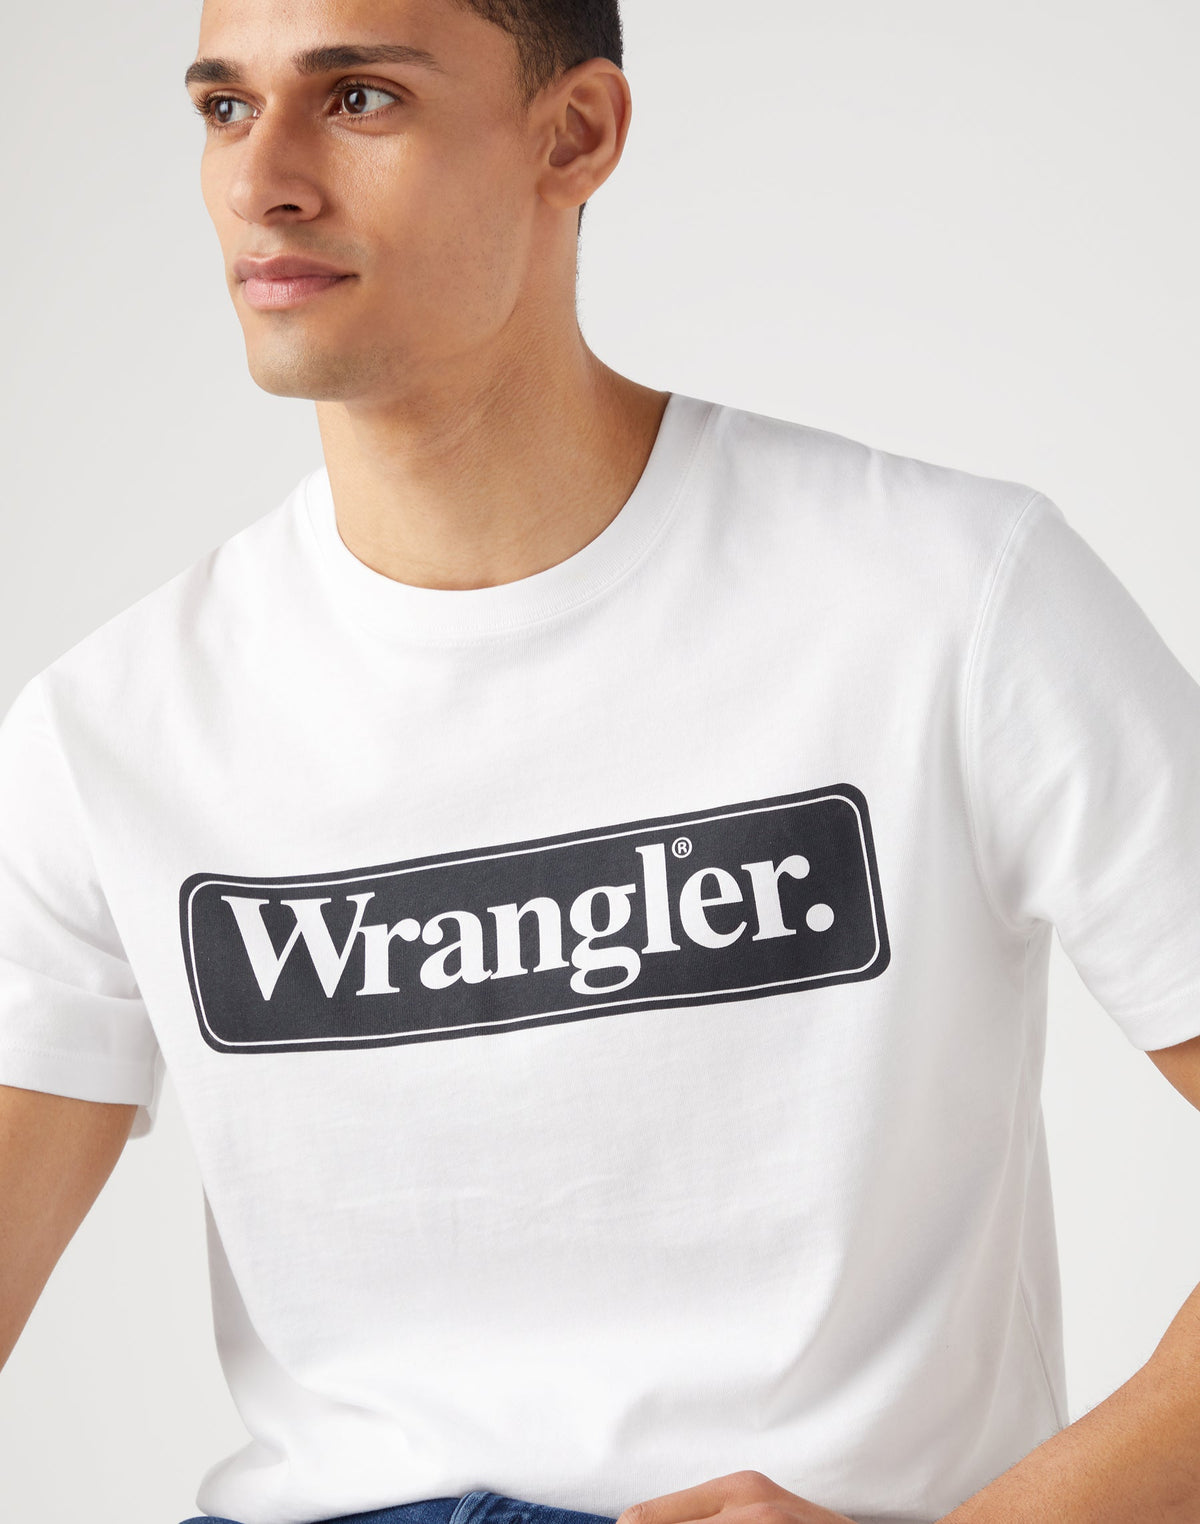 Wrangler Tee in White